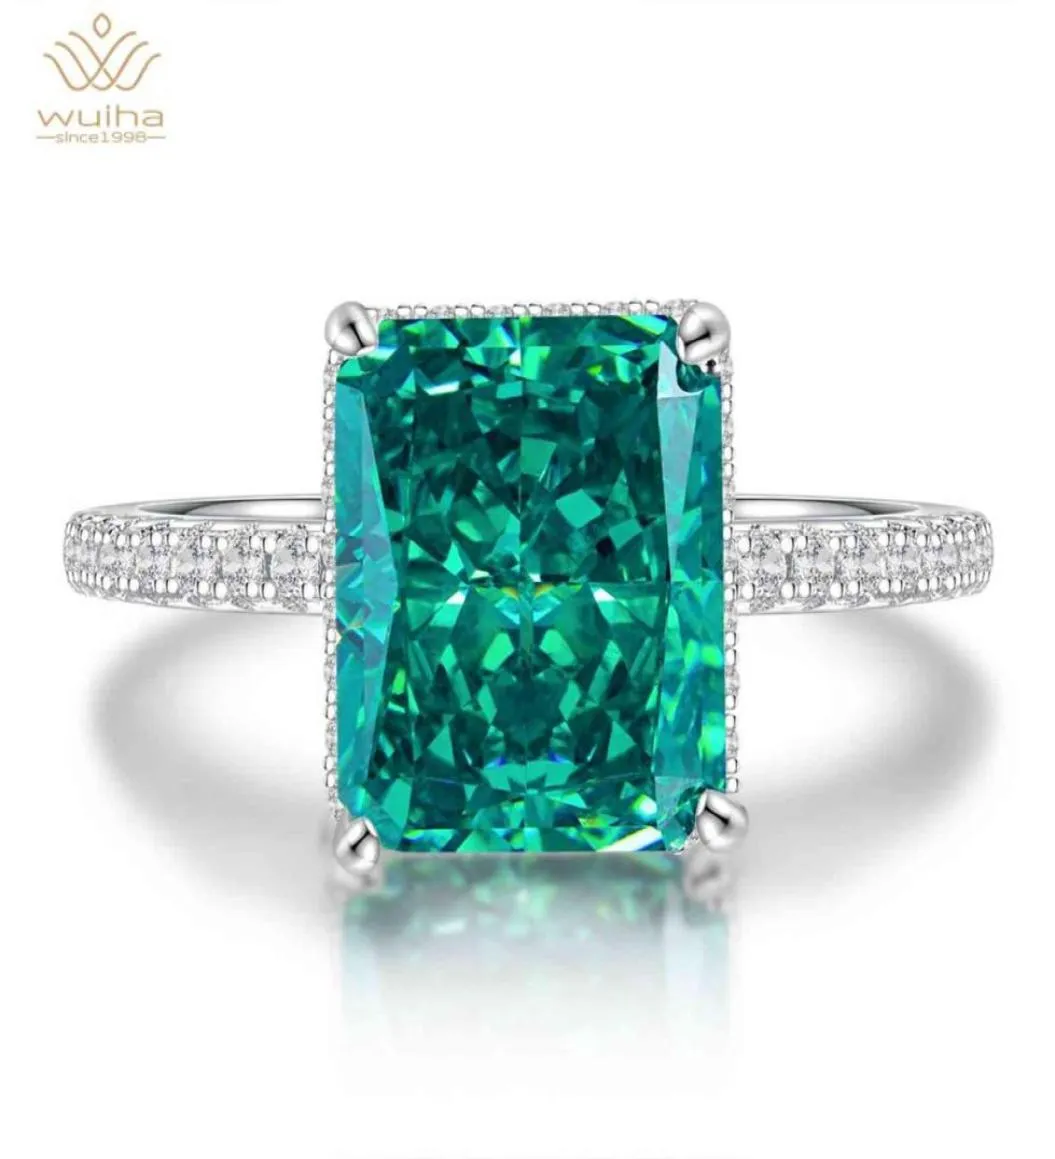 Wuiha 100 925 Sterling Silber erzeugt Moissanit Emerald Gemstone Geburtsstein Hochzeit Verlobungsring Feiner Schmuck Whole287267